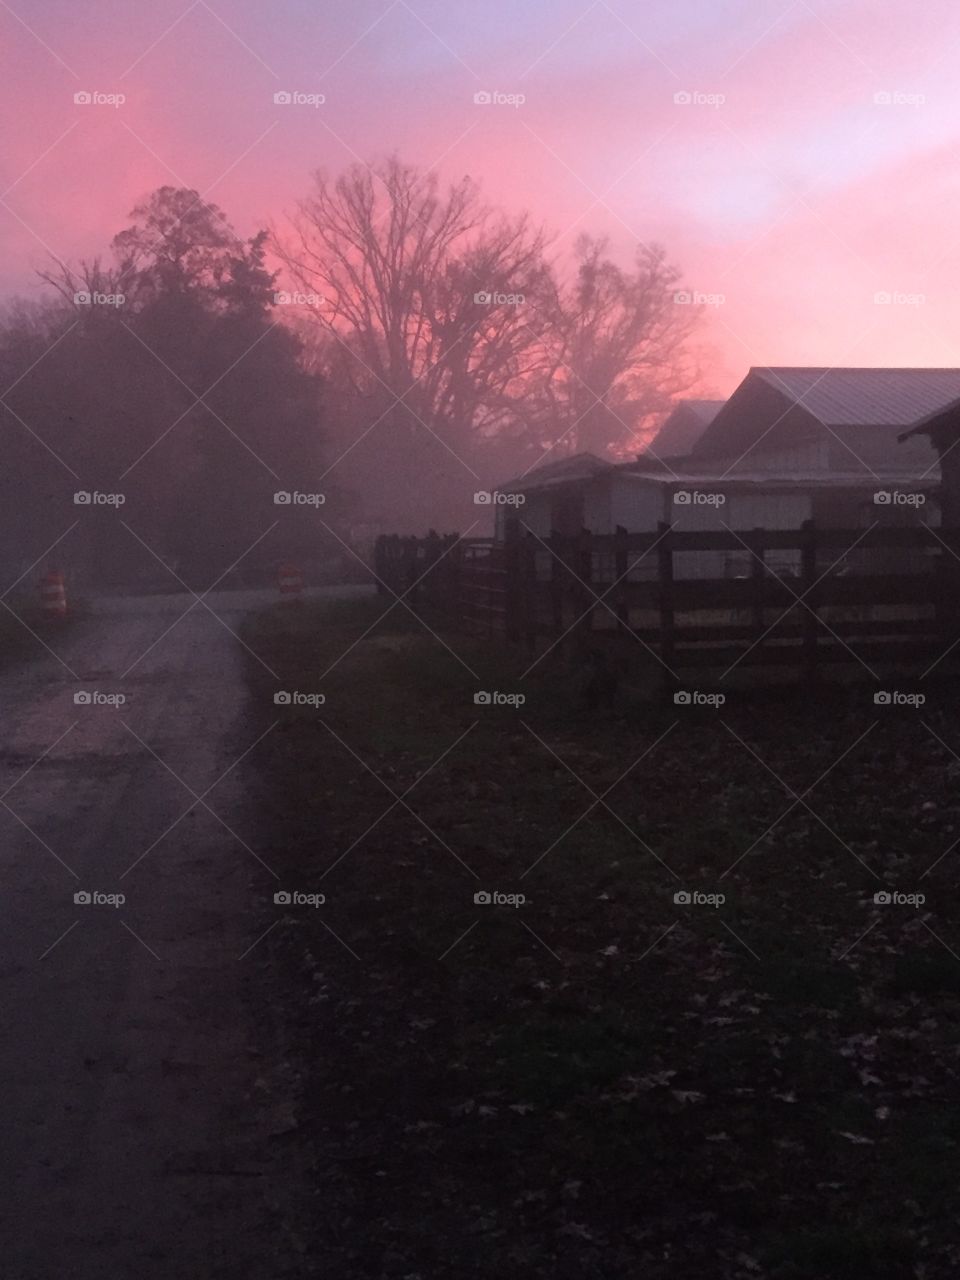 Foggy sunrise